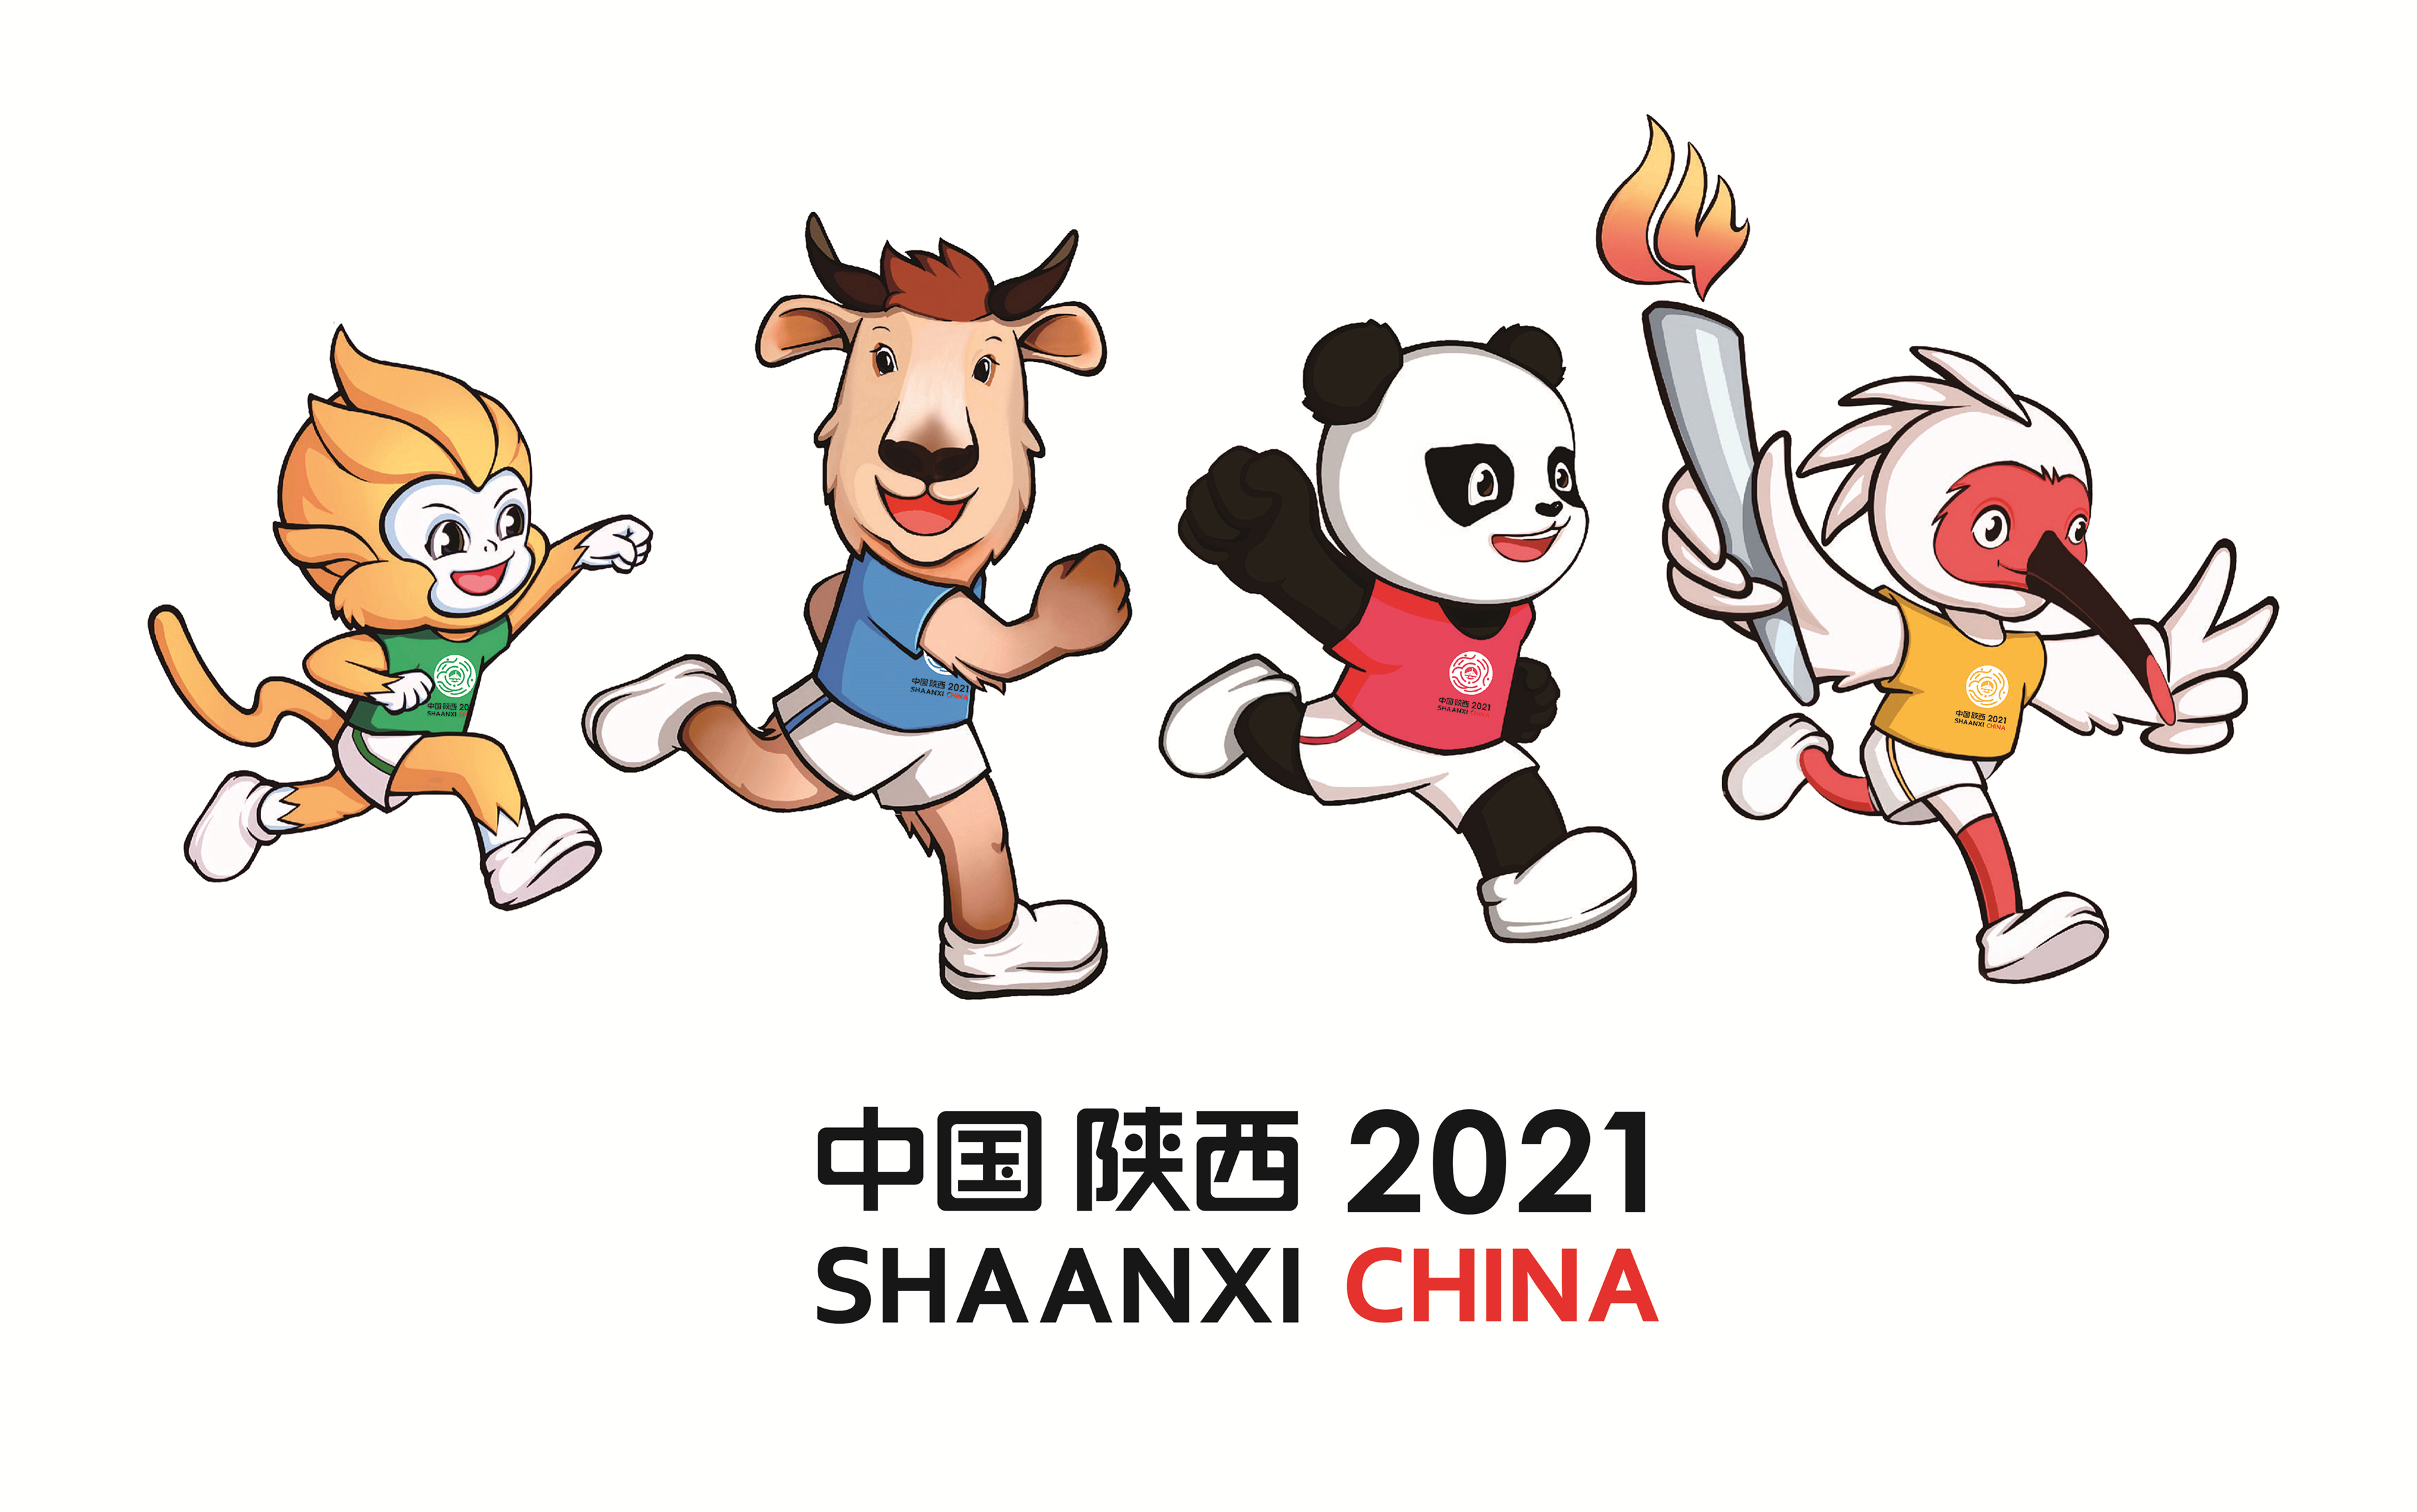 快讯:第十四届全运会将于2021年9月15日至27日在陕西举行